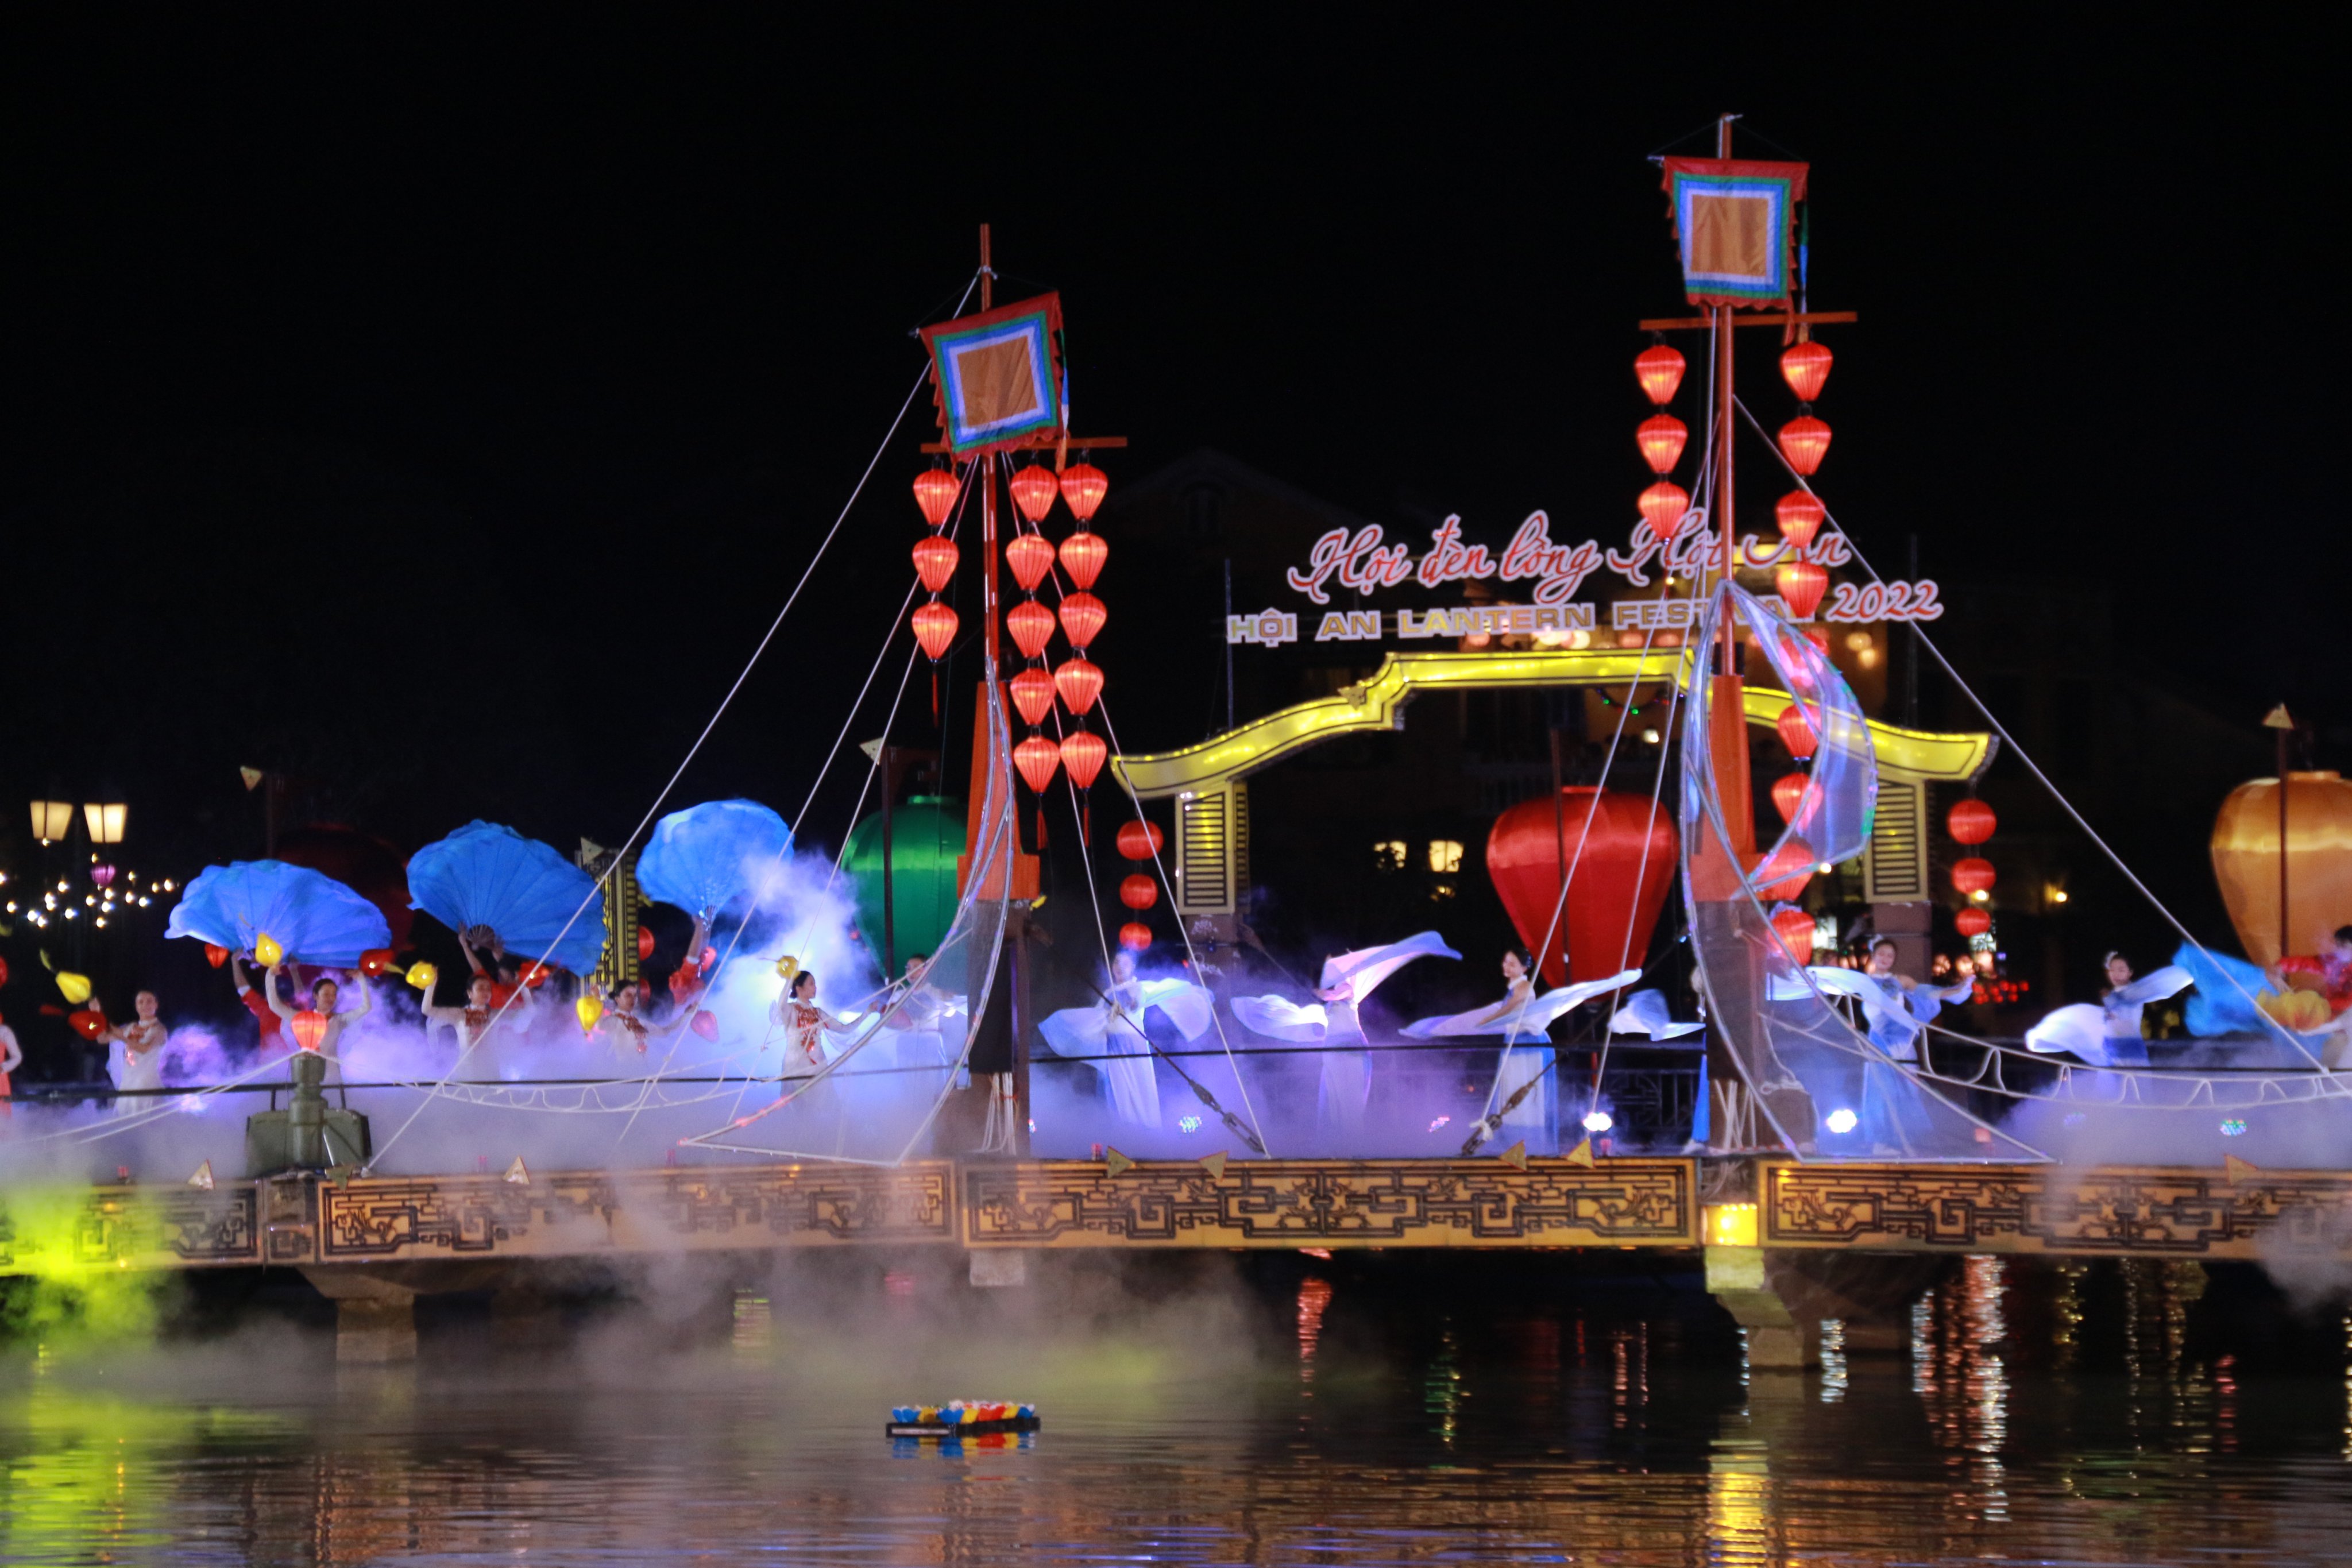 Sự kiện nhằm tôn vinh nghề làm đèn lồng truyền thống nổi tiếng của Hội An. Ảnh: VGP/Lưu Hương